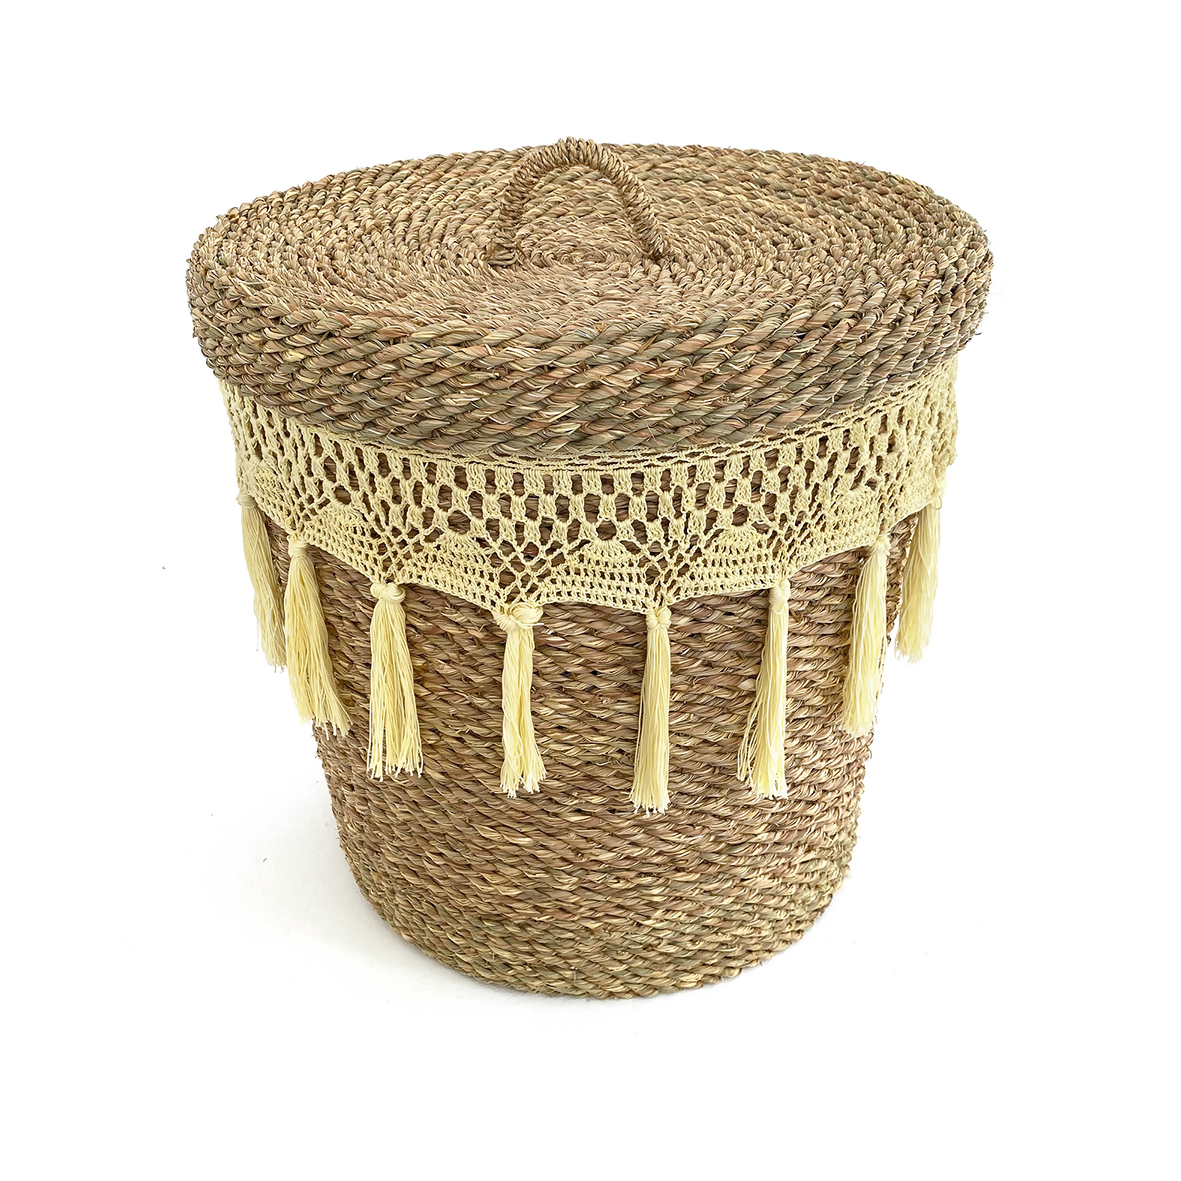 Crochet Wicker Halfa Laundry Basket